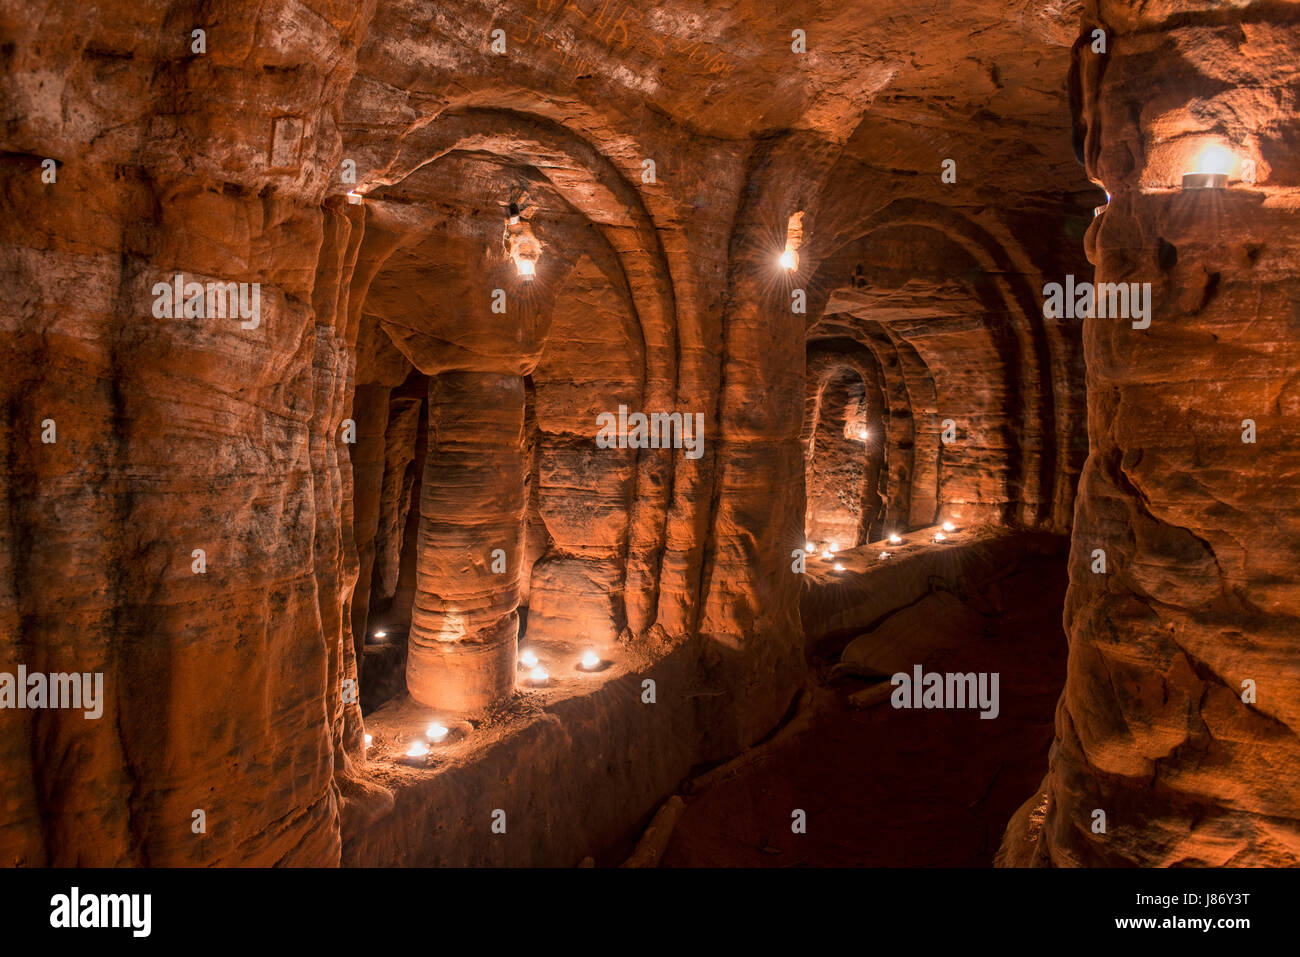 À l'aide de t l'éclairage des feux de chambres souterraines des grottes Caynton, près de Shifnal, Shropshire, England, UK. Banque D'Images